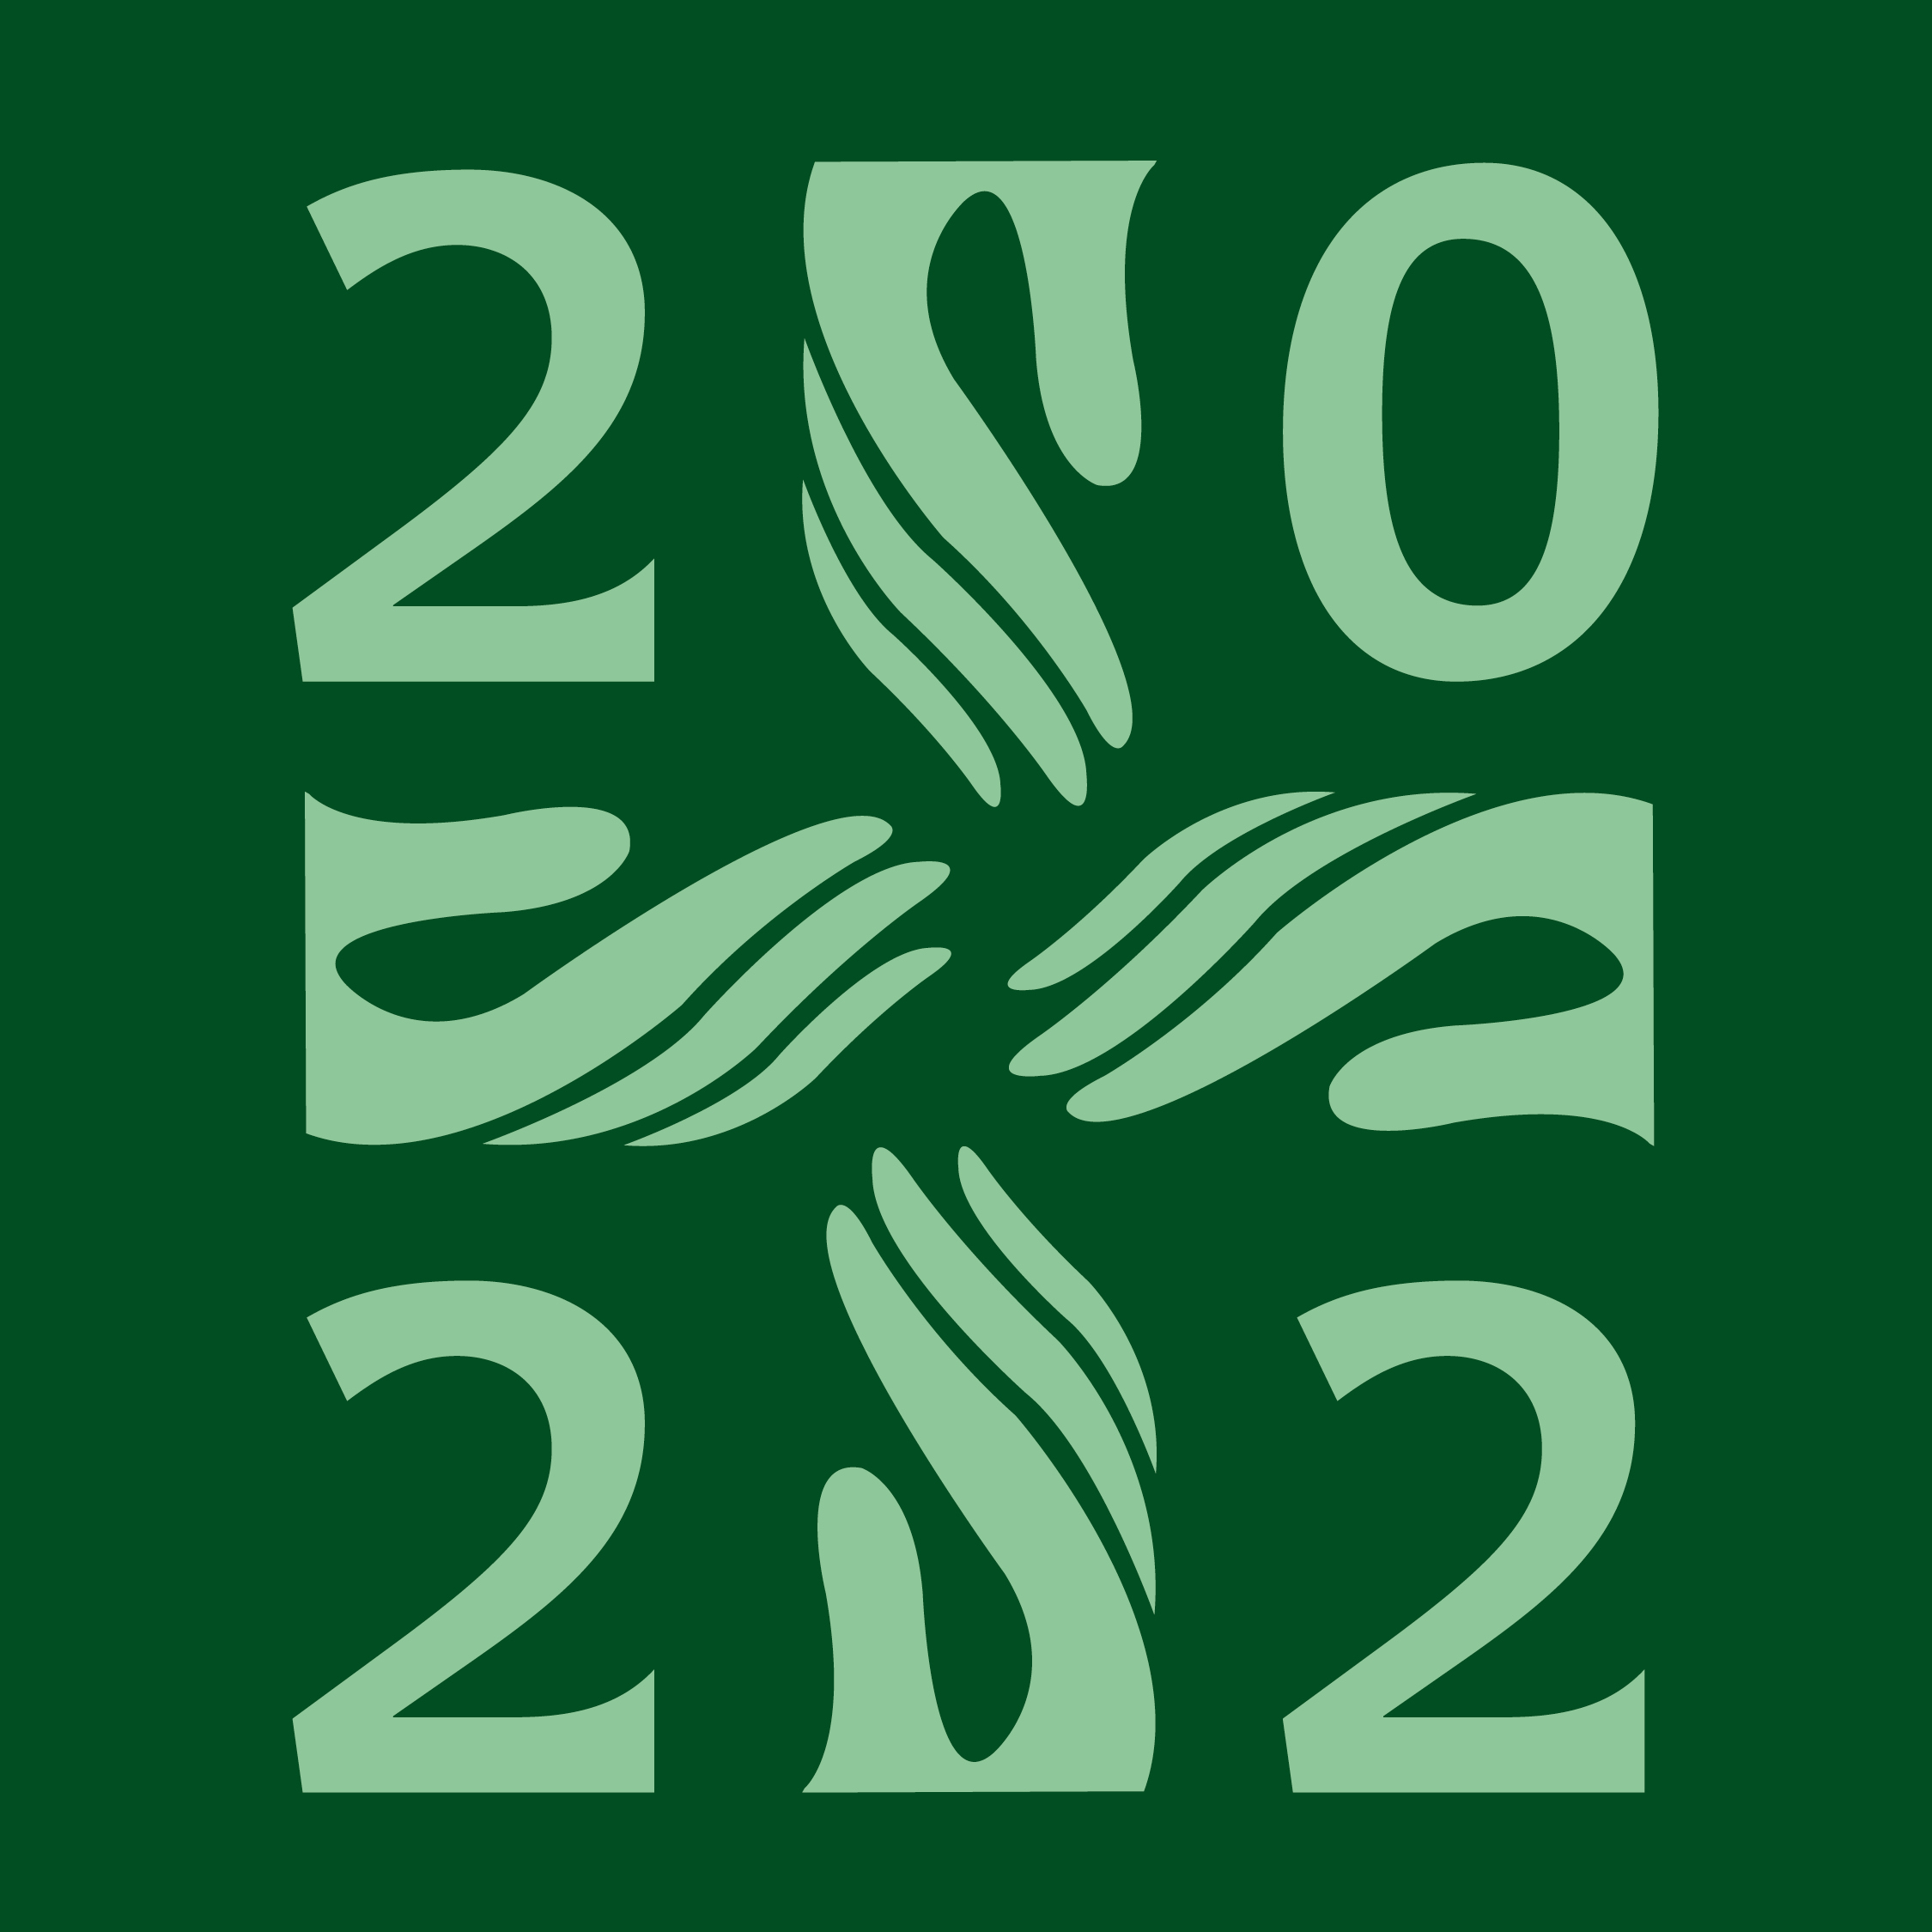 Diakonian juhlavuoden logo, jossa numerot 2022 ja käsien muodostama risti 